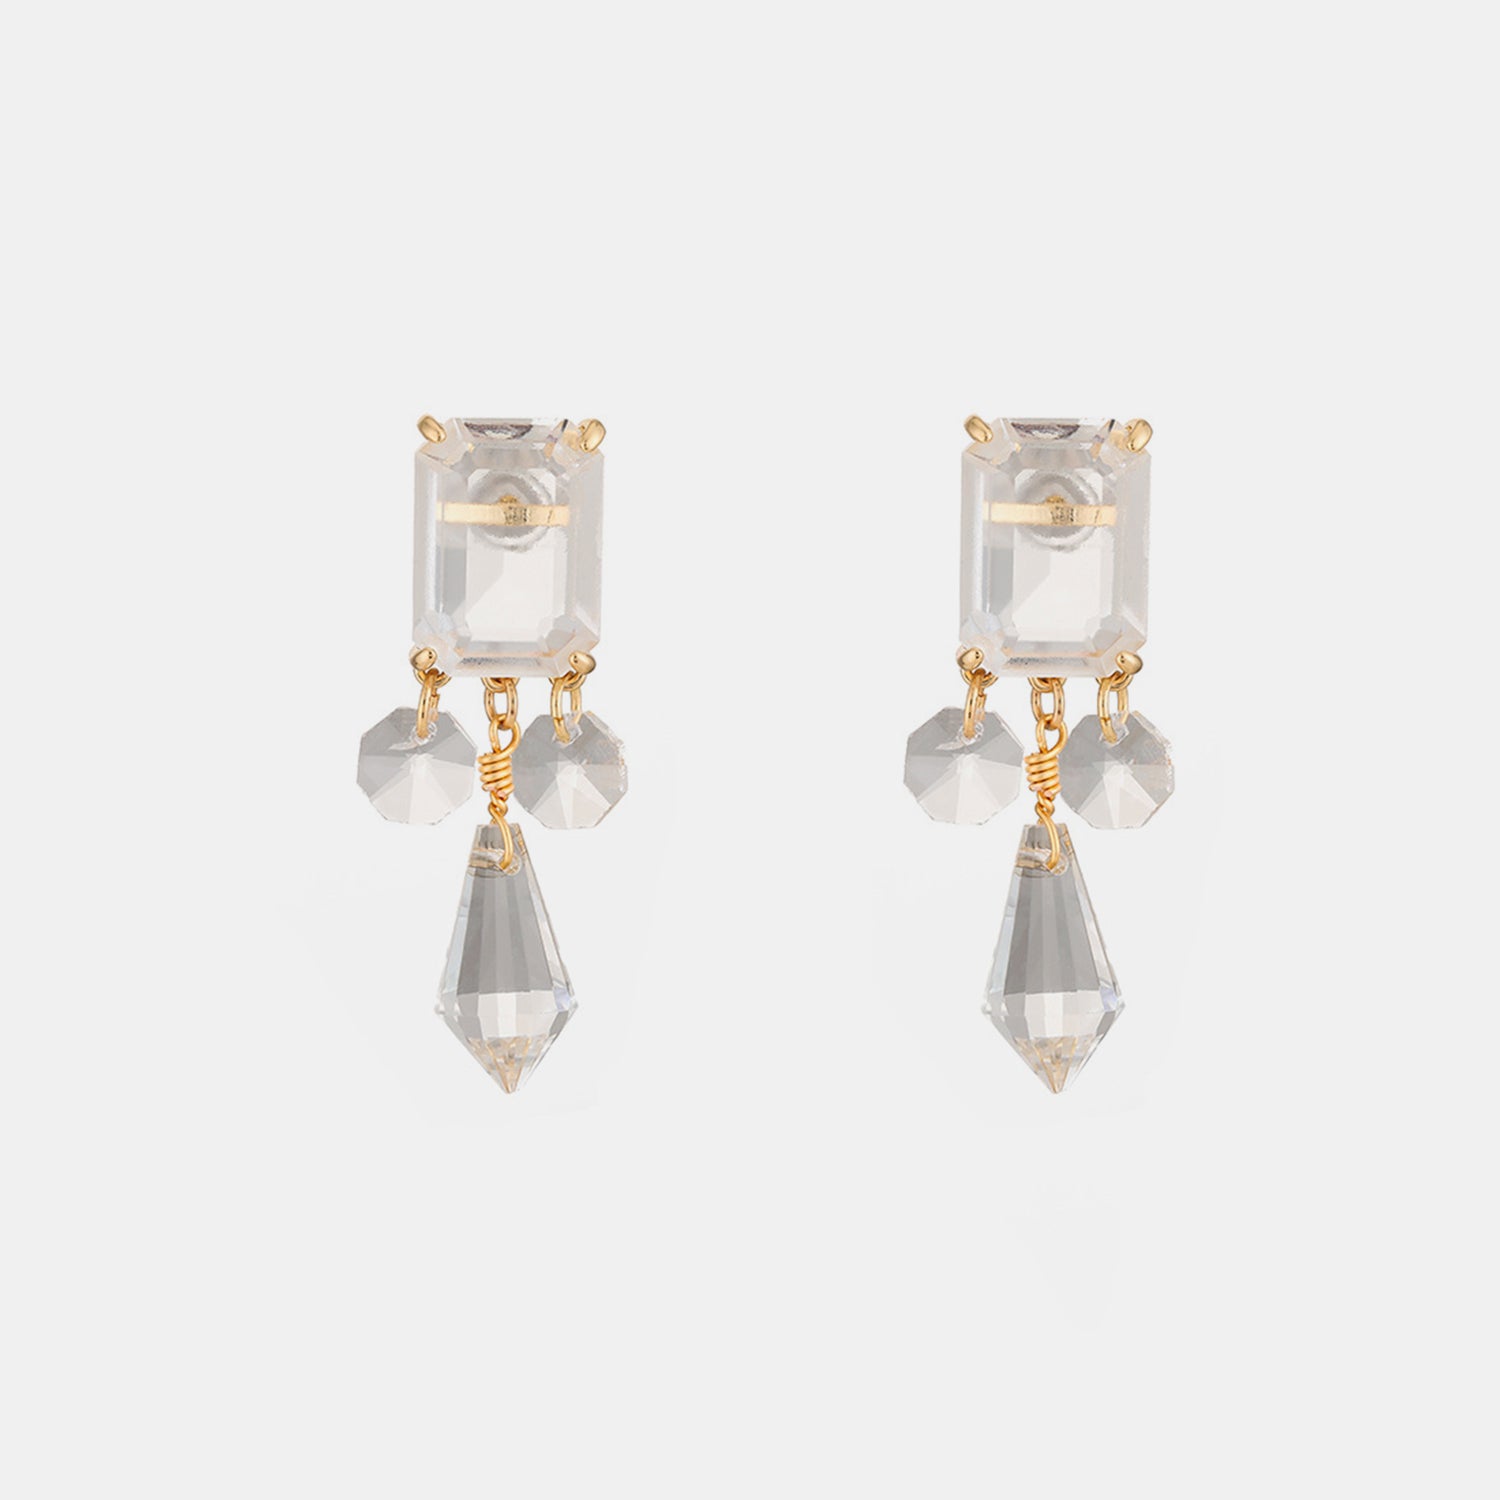 Alloy Glass Dangle Earrings